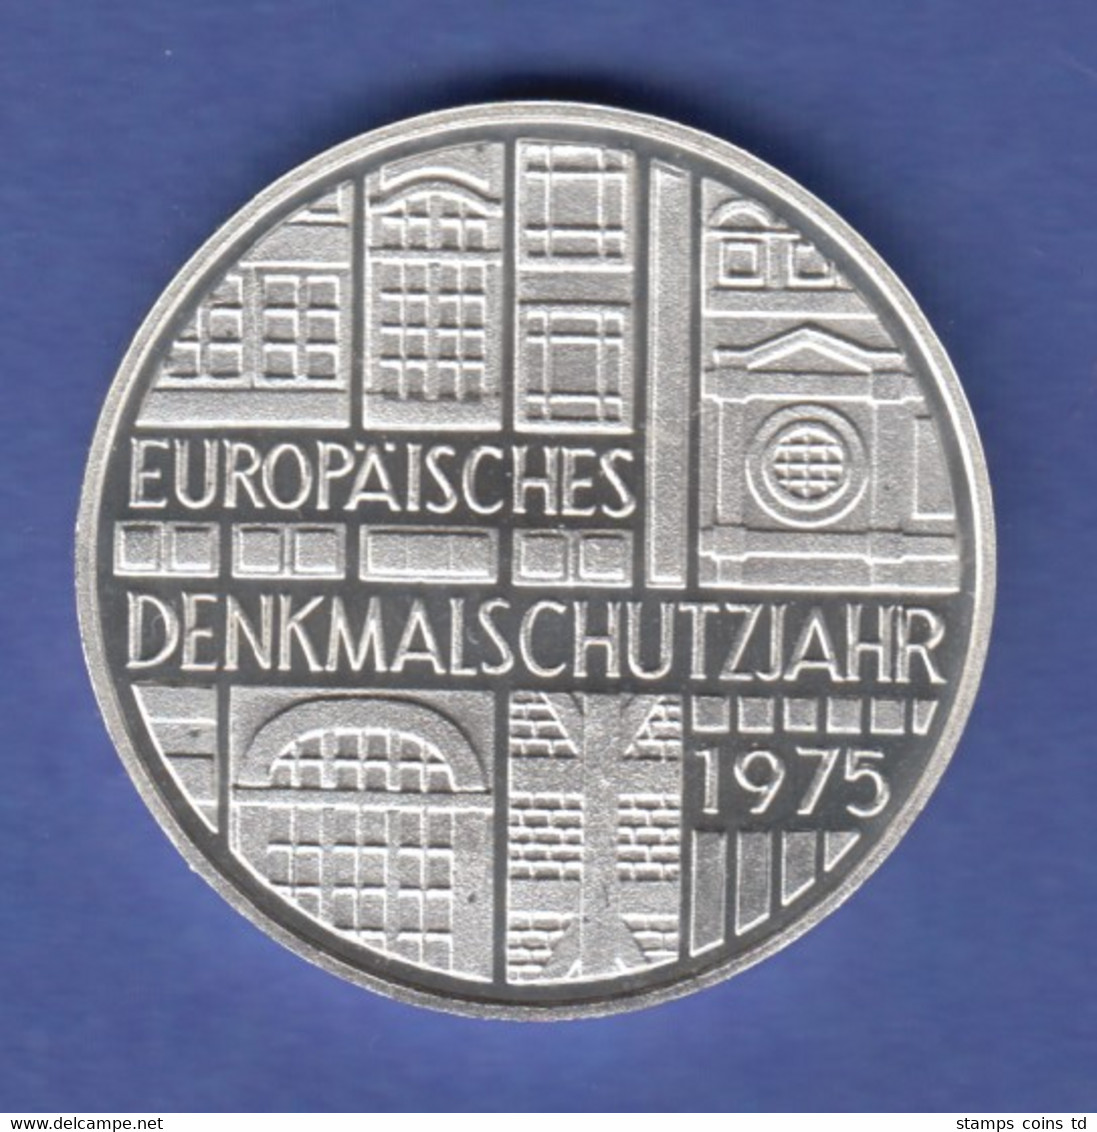 Bundesrepublik 5DM Silber-Gedenkmünze 1975 Europäisches Denkmalschutzjahr PP - 5 Mark